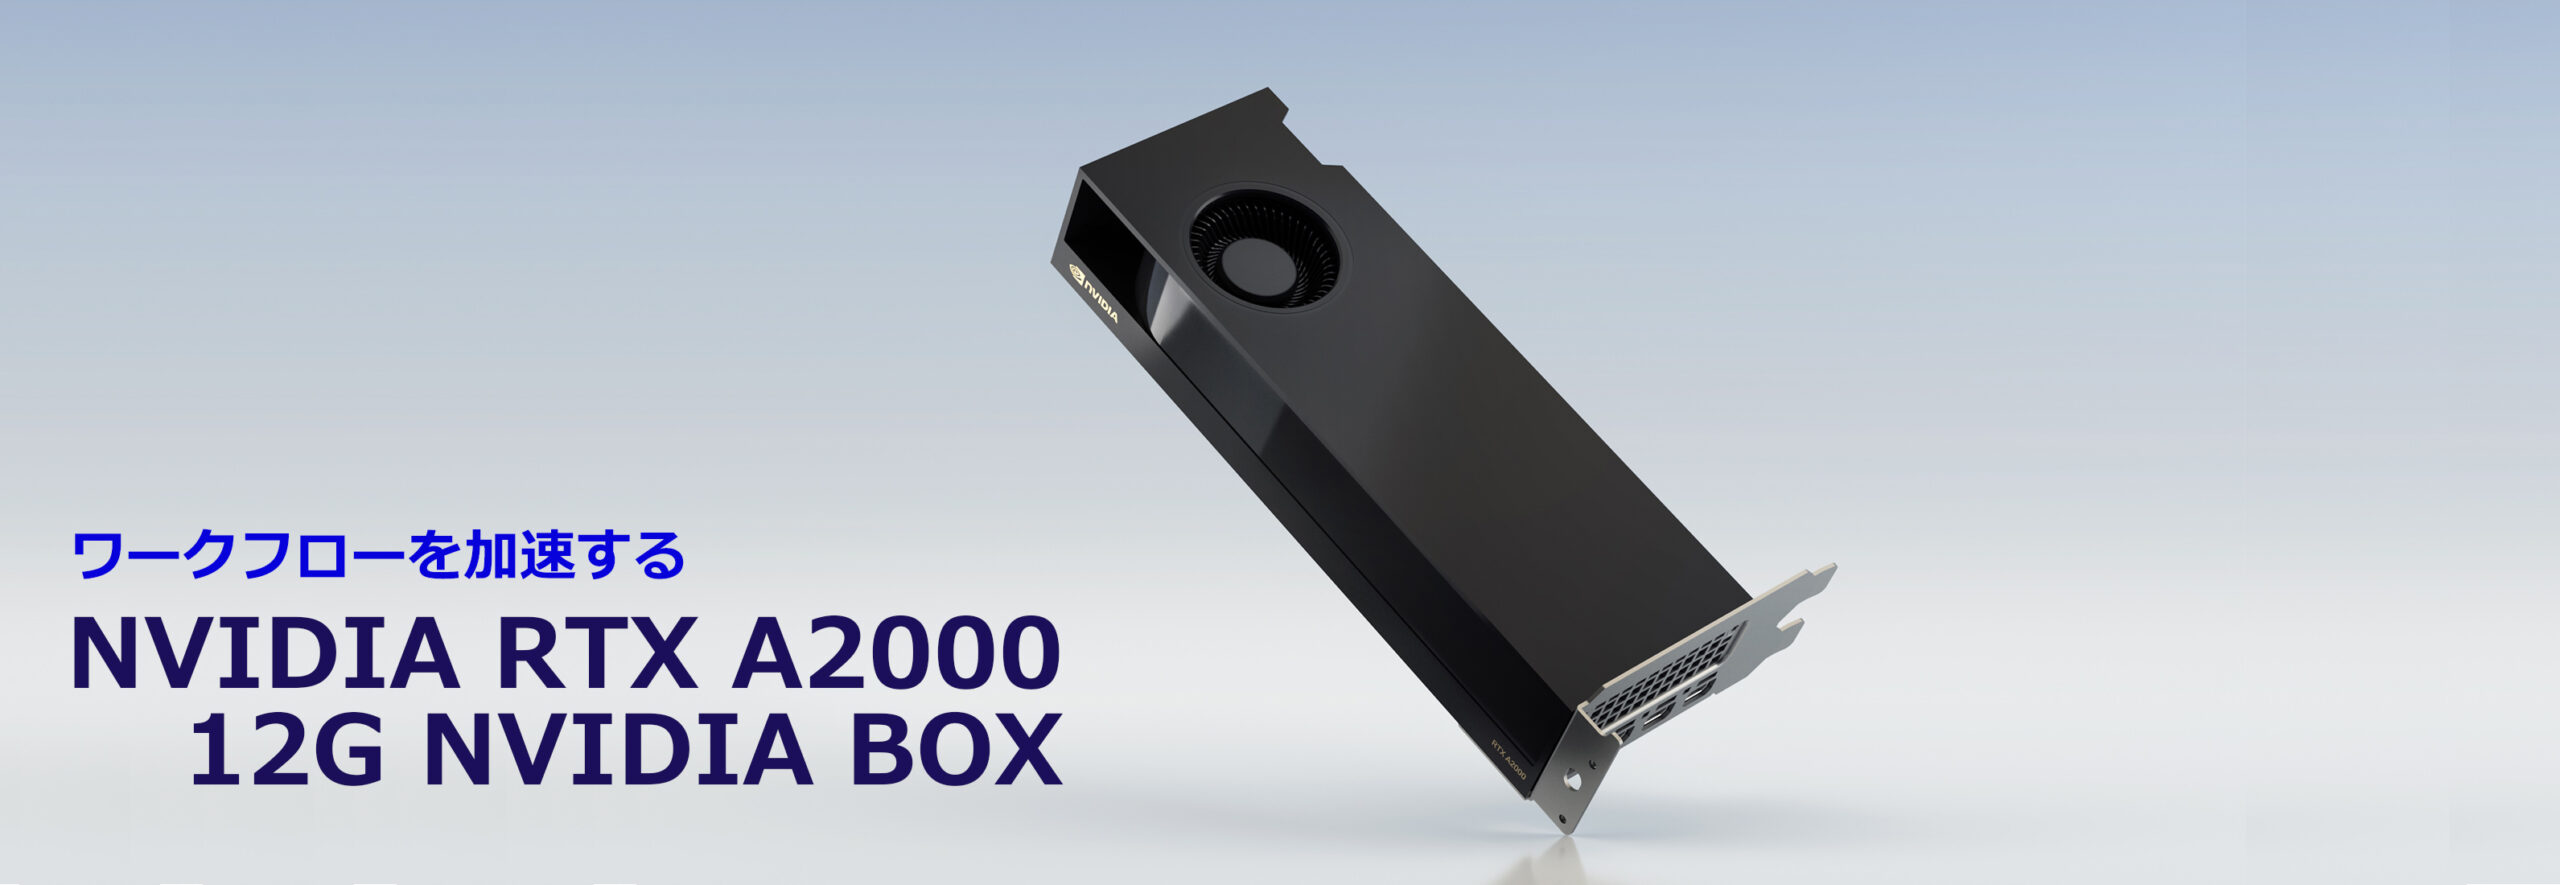 NVIDIA RTX A2000 12G NVIDIA BOX【美品】 - PCパーツ